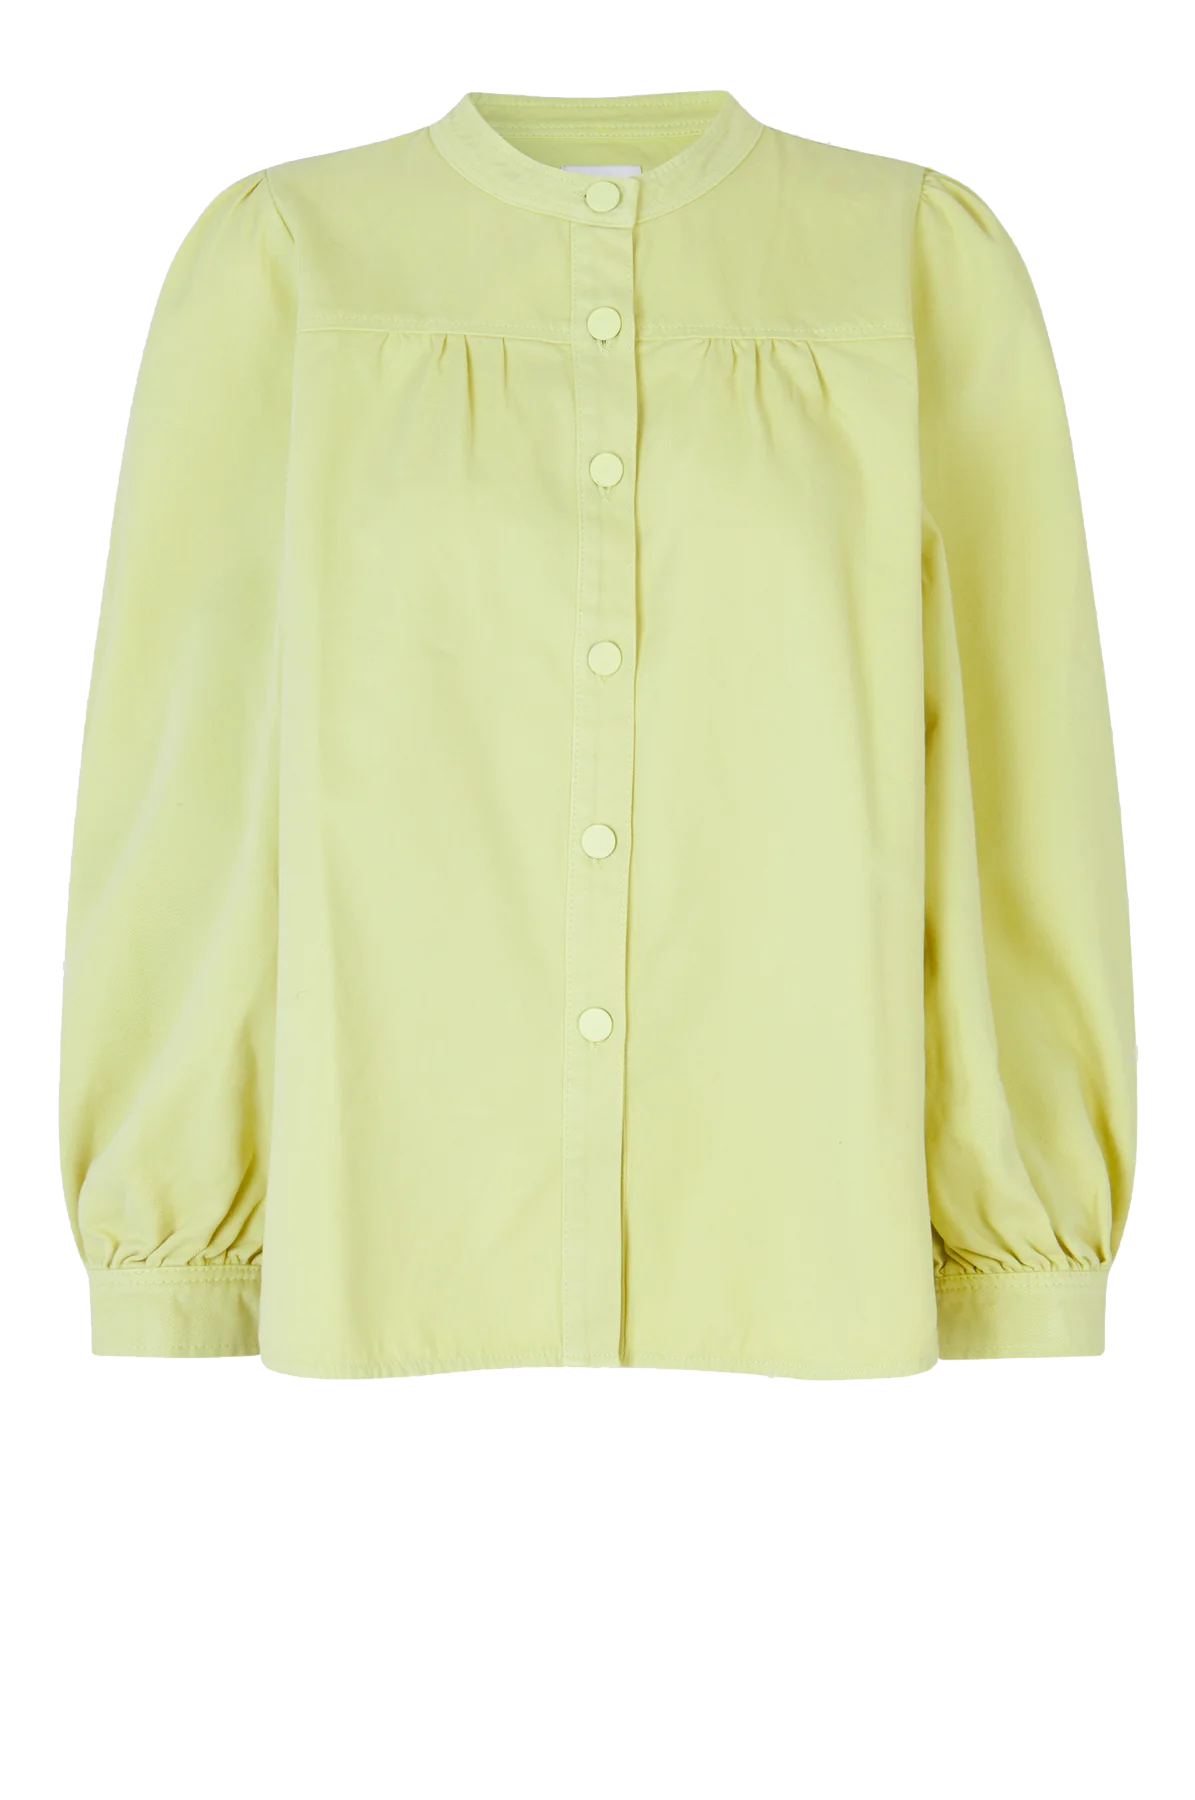 Zizanne Shirt Mellow Yellow